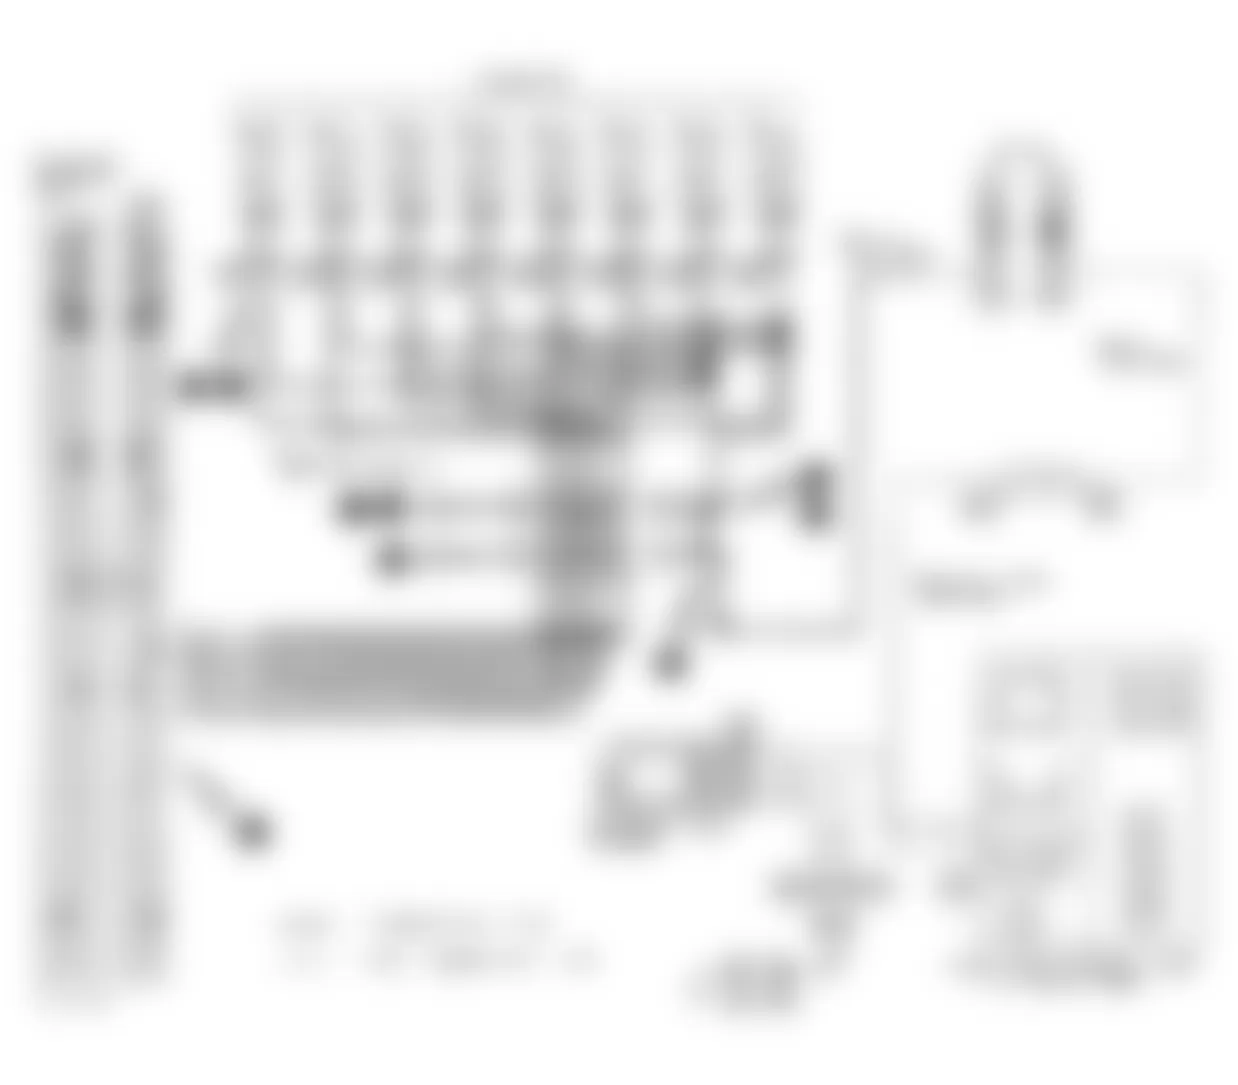 Infiniti Q45 a 1991 - Component Locations -  Code 51: Injector Ckt. Circuit Diagram